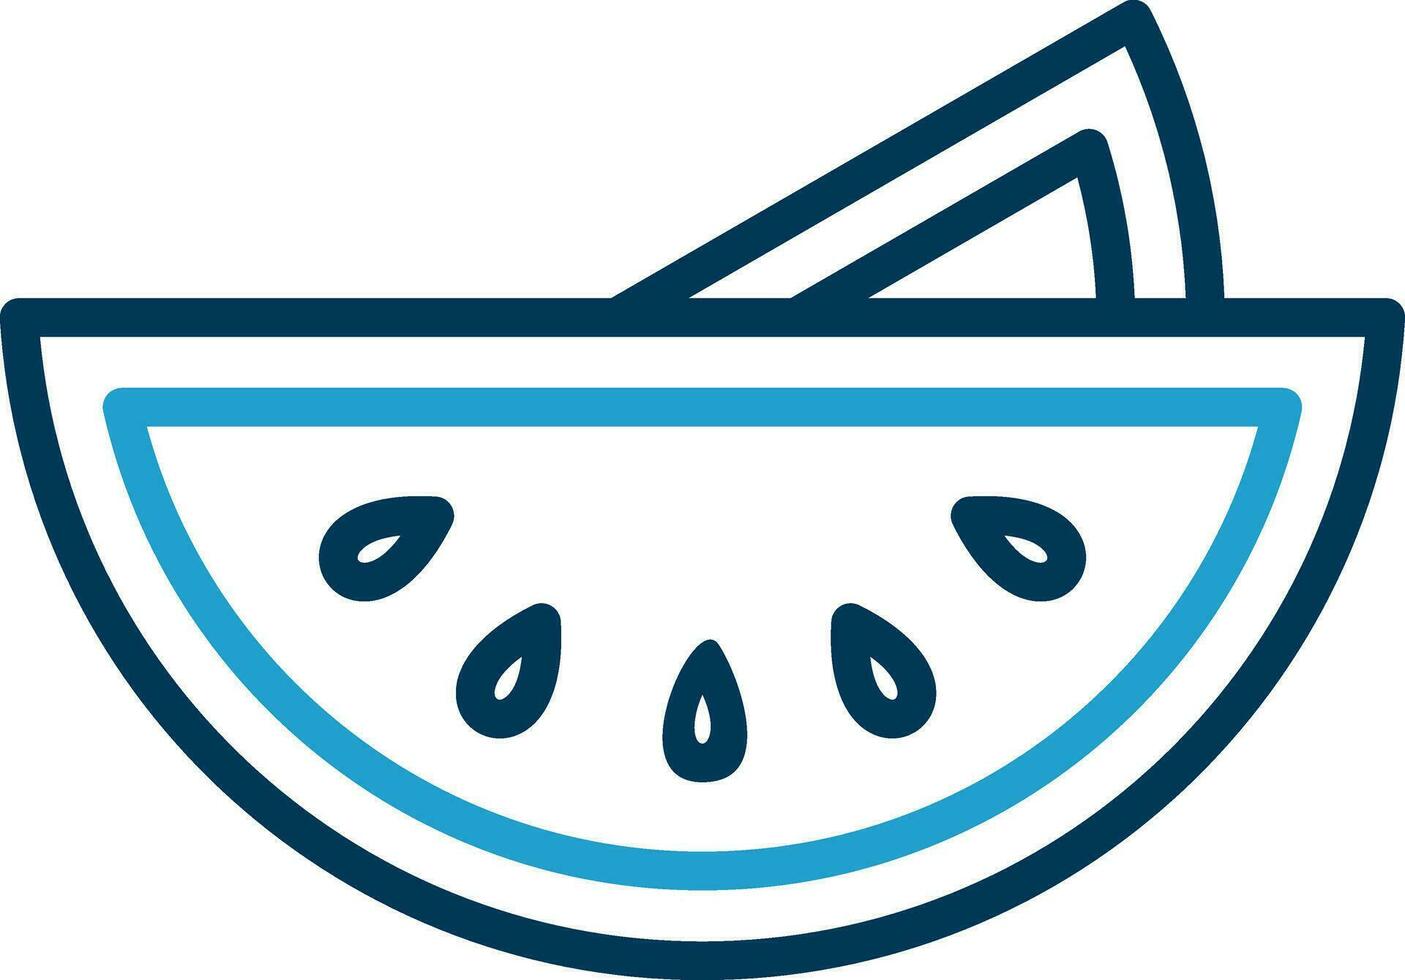 Watermelon Vector Icon Design